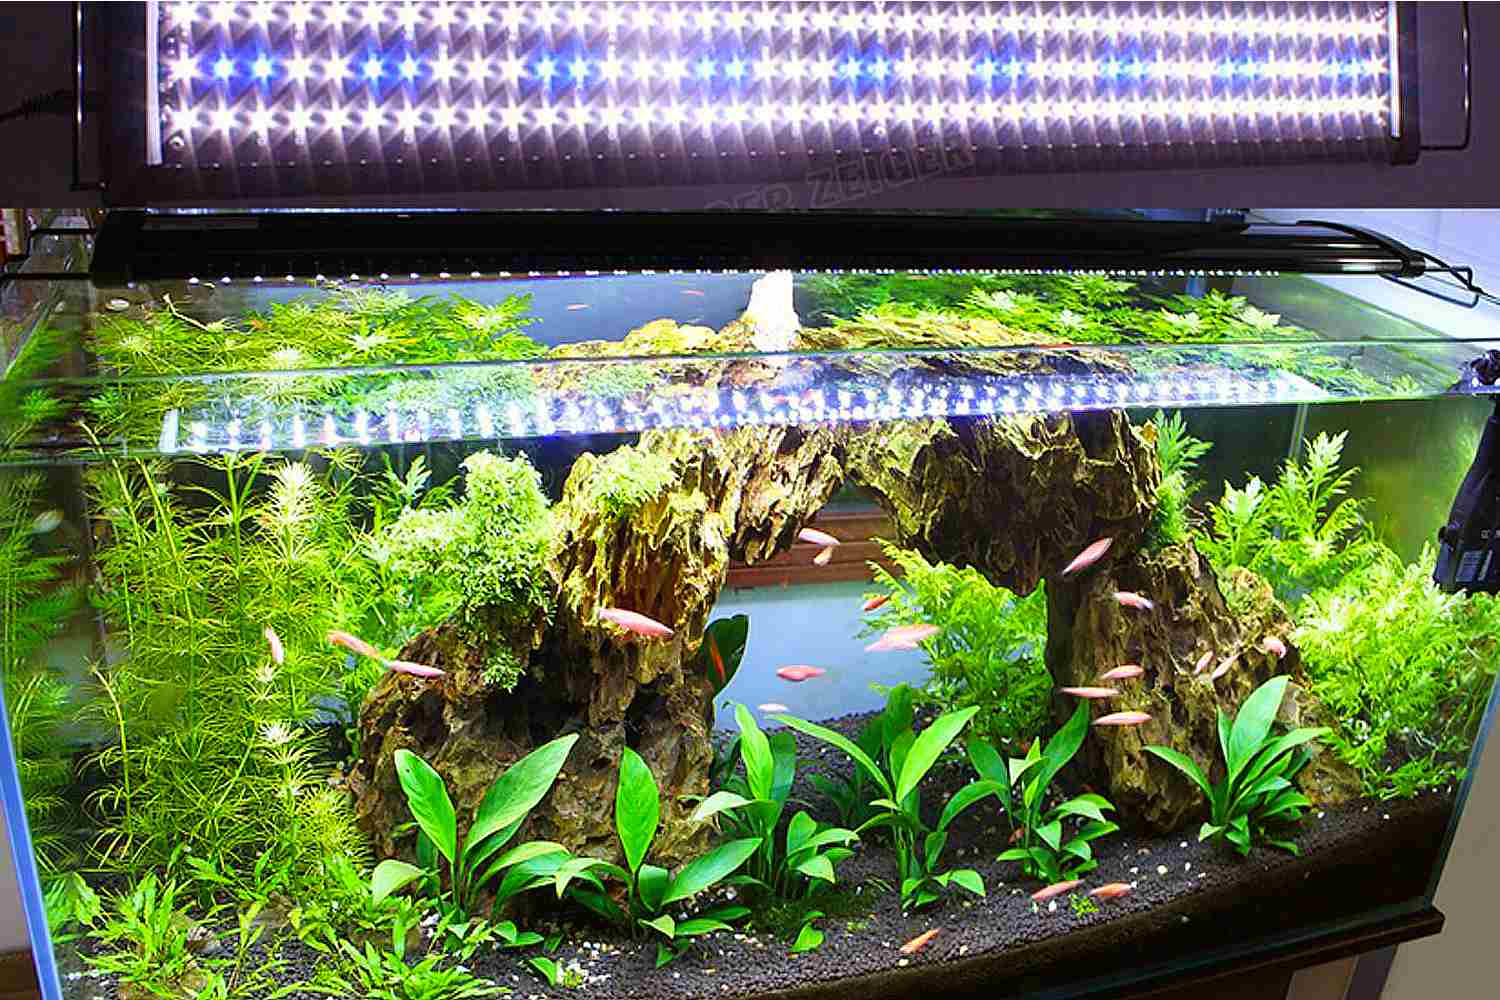 Aquarium Plants and LED Lights